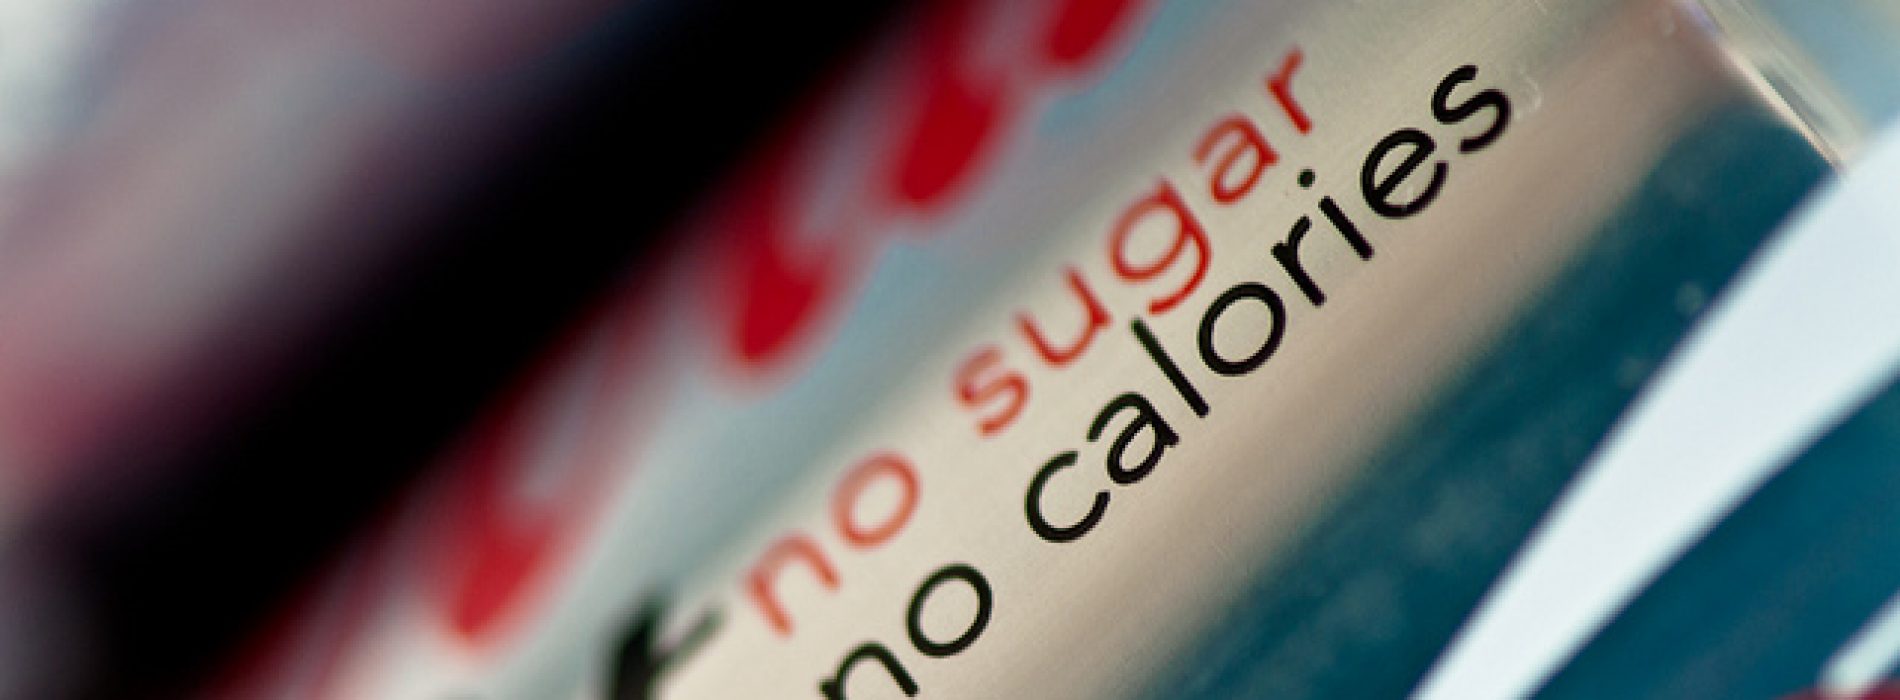 De vervanger van suiker in Cola Light is Aspartaam – DIT is wat het met je lichaam doet!